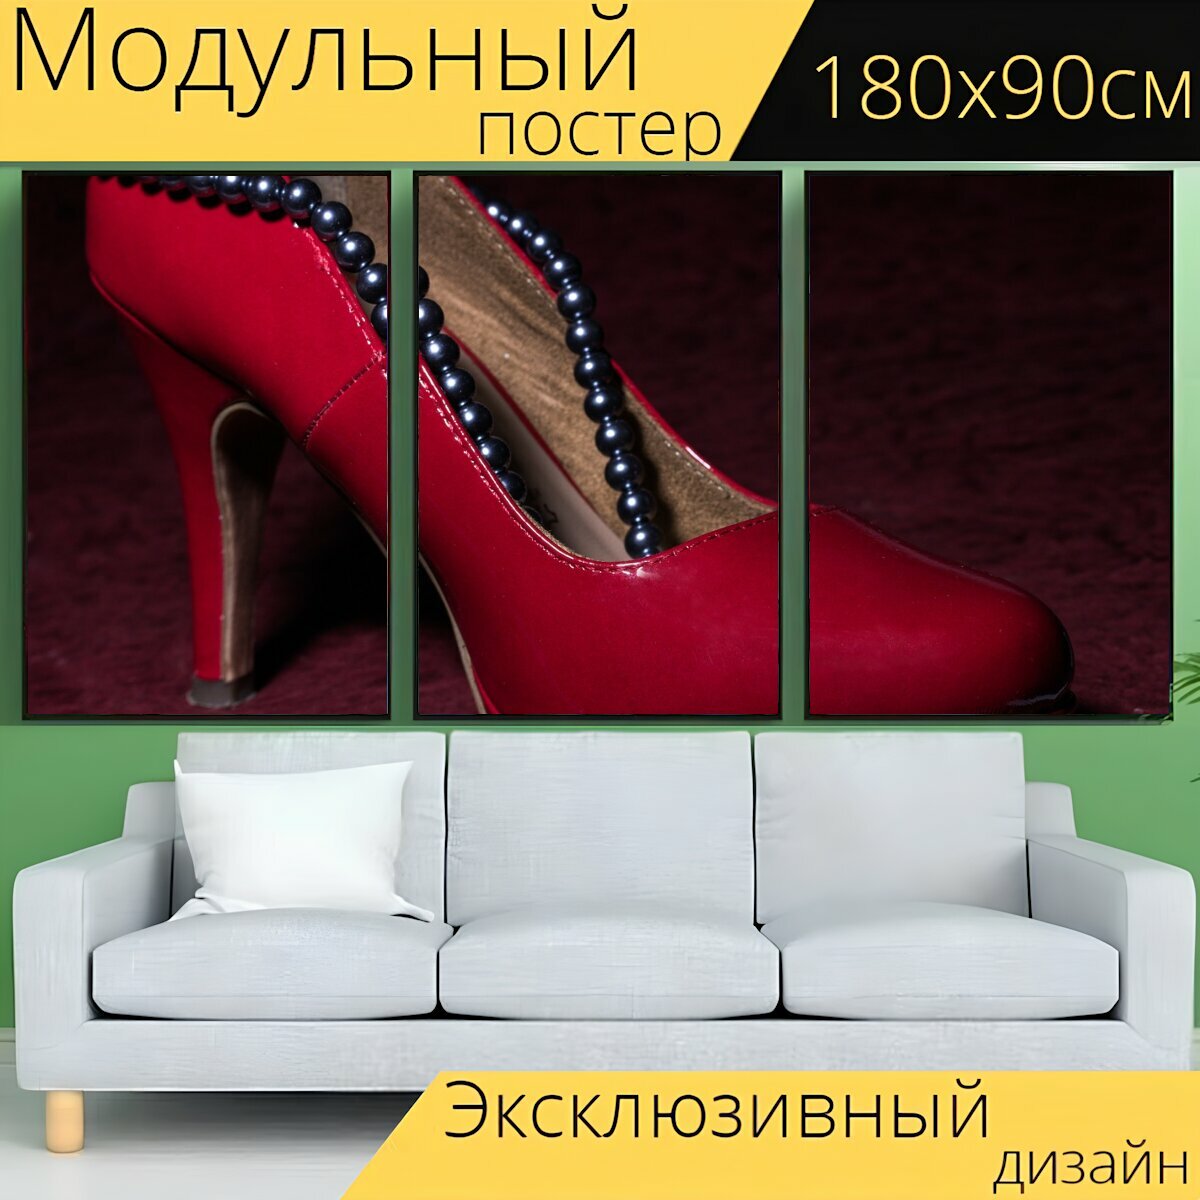 Модульный постер "Обувь, женская обувь, красный" 180 x 90 см. для интерьера